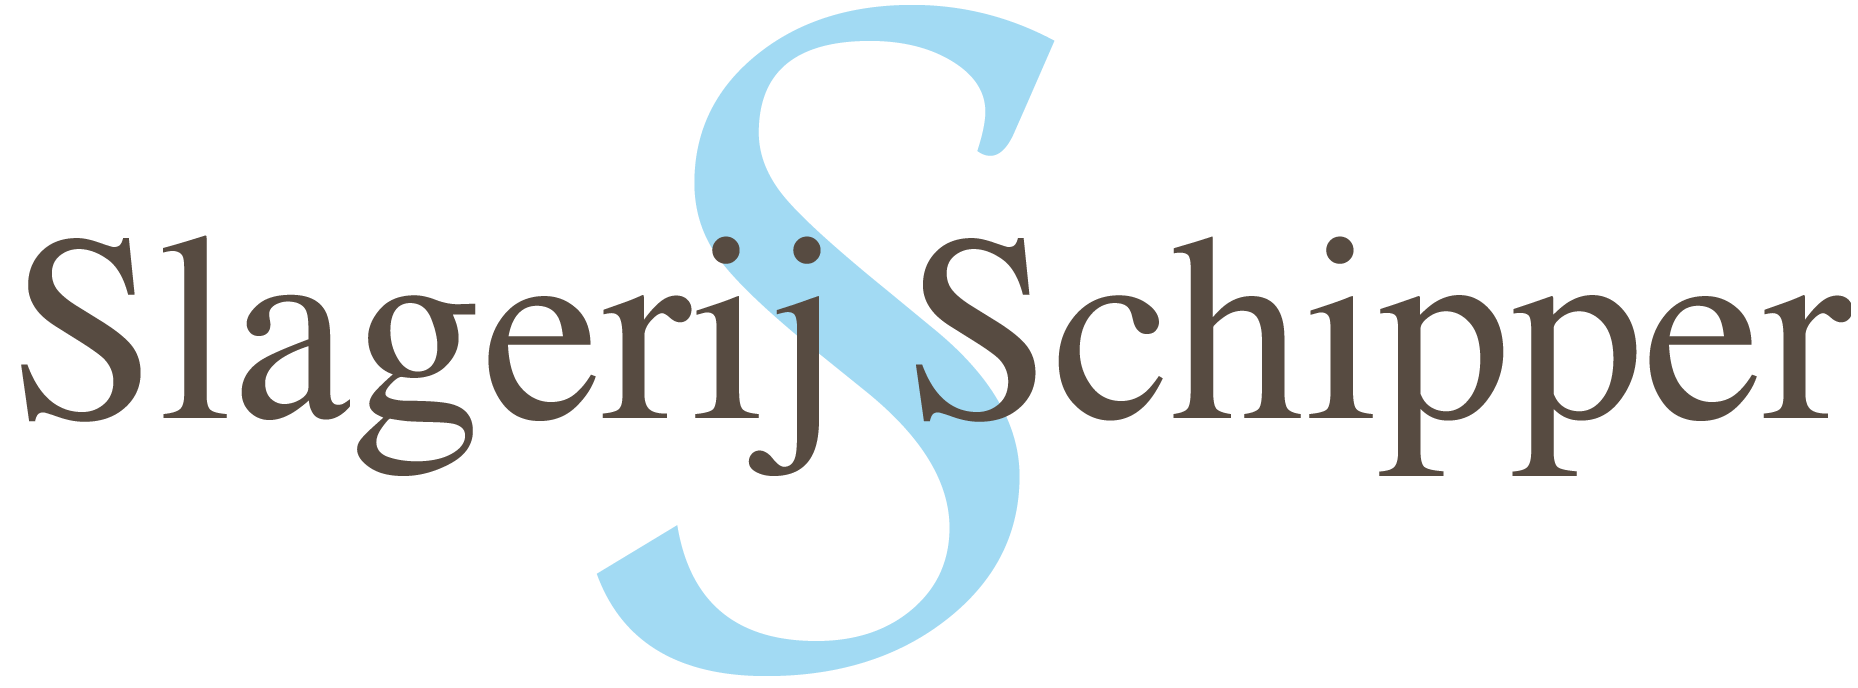 Webshop Slagerij Schipper logo